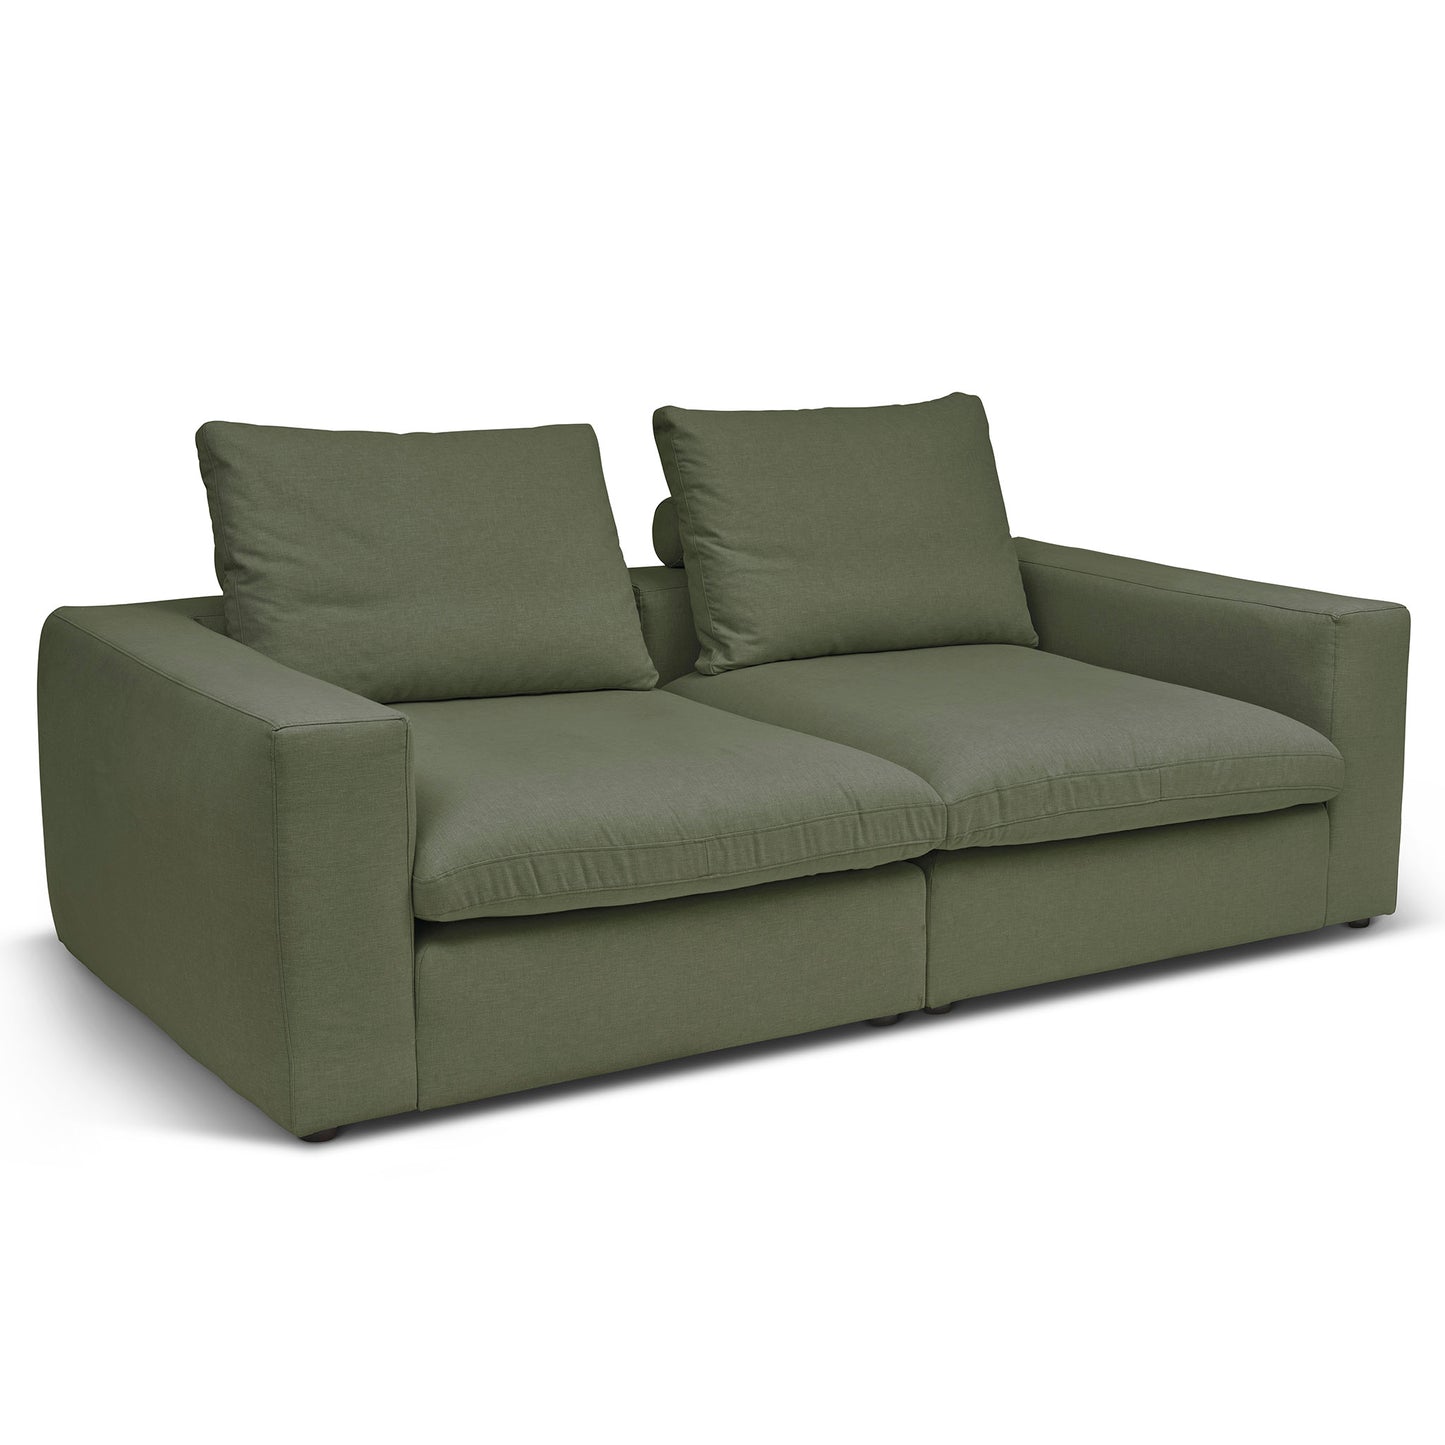 Extra djup 3-sits soffa i grön färg. Palazzo är en byggbar modulsoffa